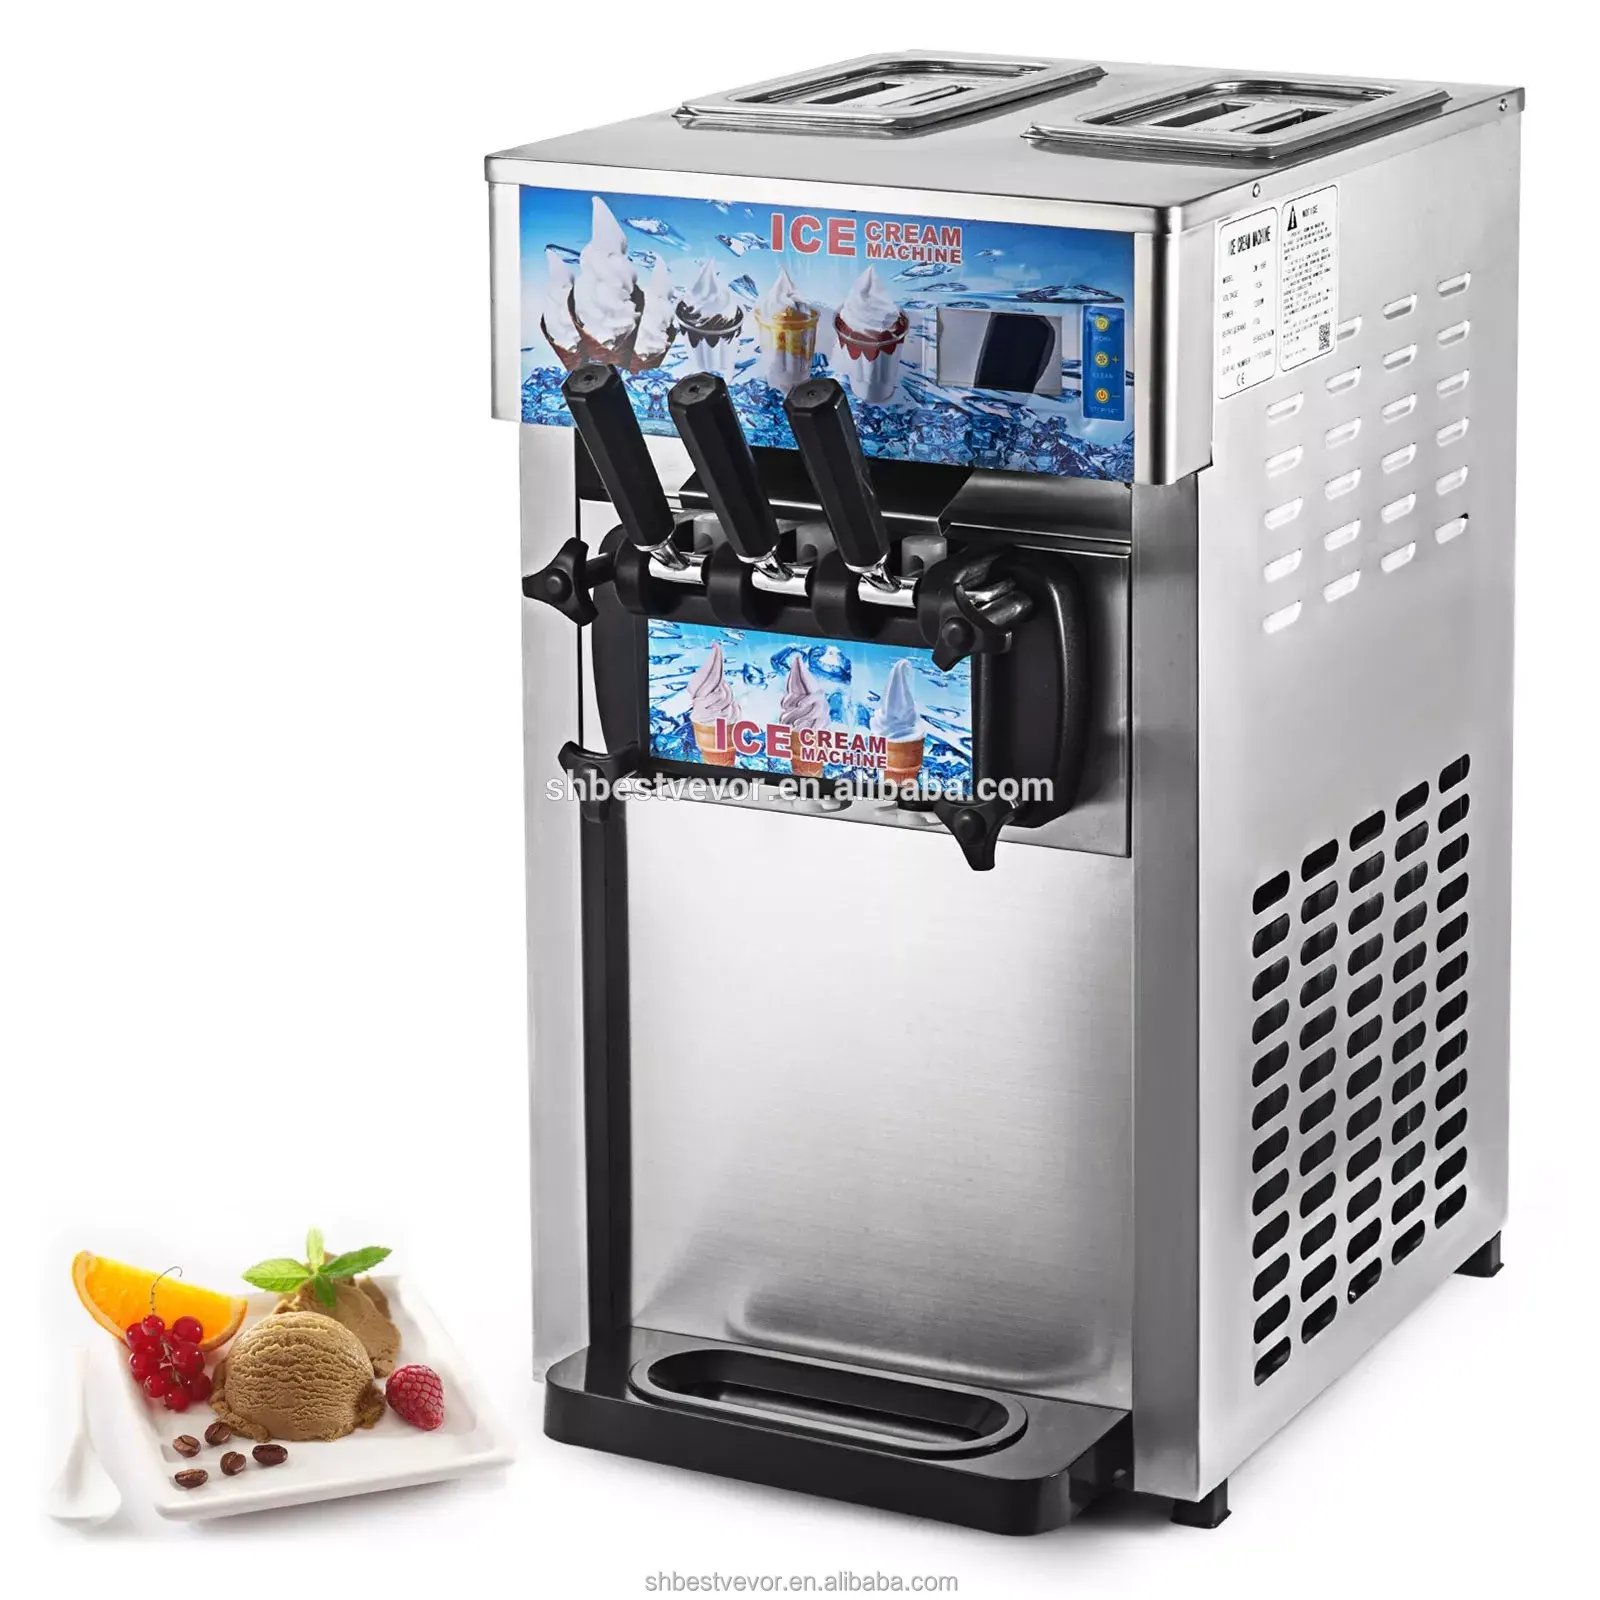 Máquina comercial de helados de 18l, máquina para hacer helados de Yogurt helado con 2 + 1 sabores, servicio suave